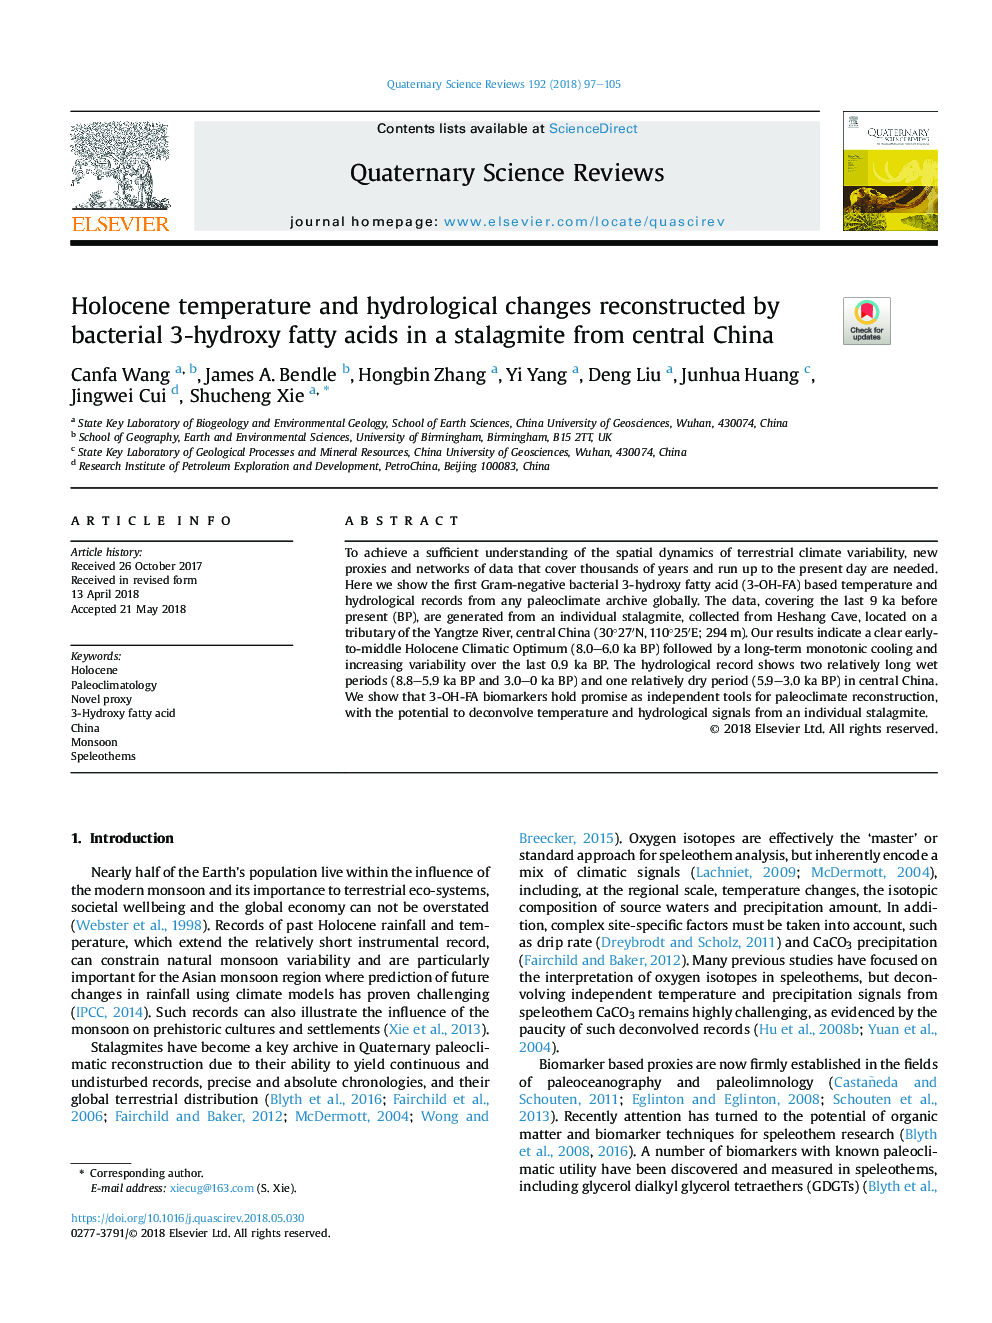 تغییرات هولوسن و تغییرات هیدرولوژیکی توسط اسیدهای چرب 3-هیدروکسی باکتریایی در یک استالاگمیت از مرکز مرکزی چین